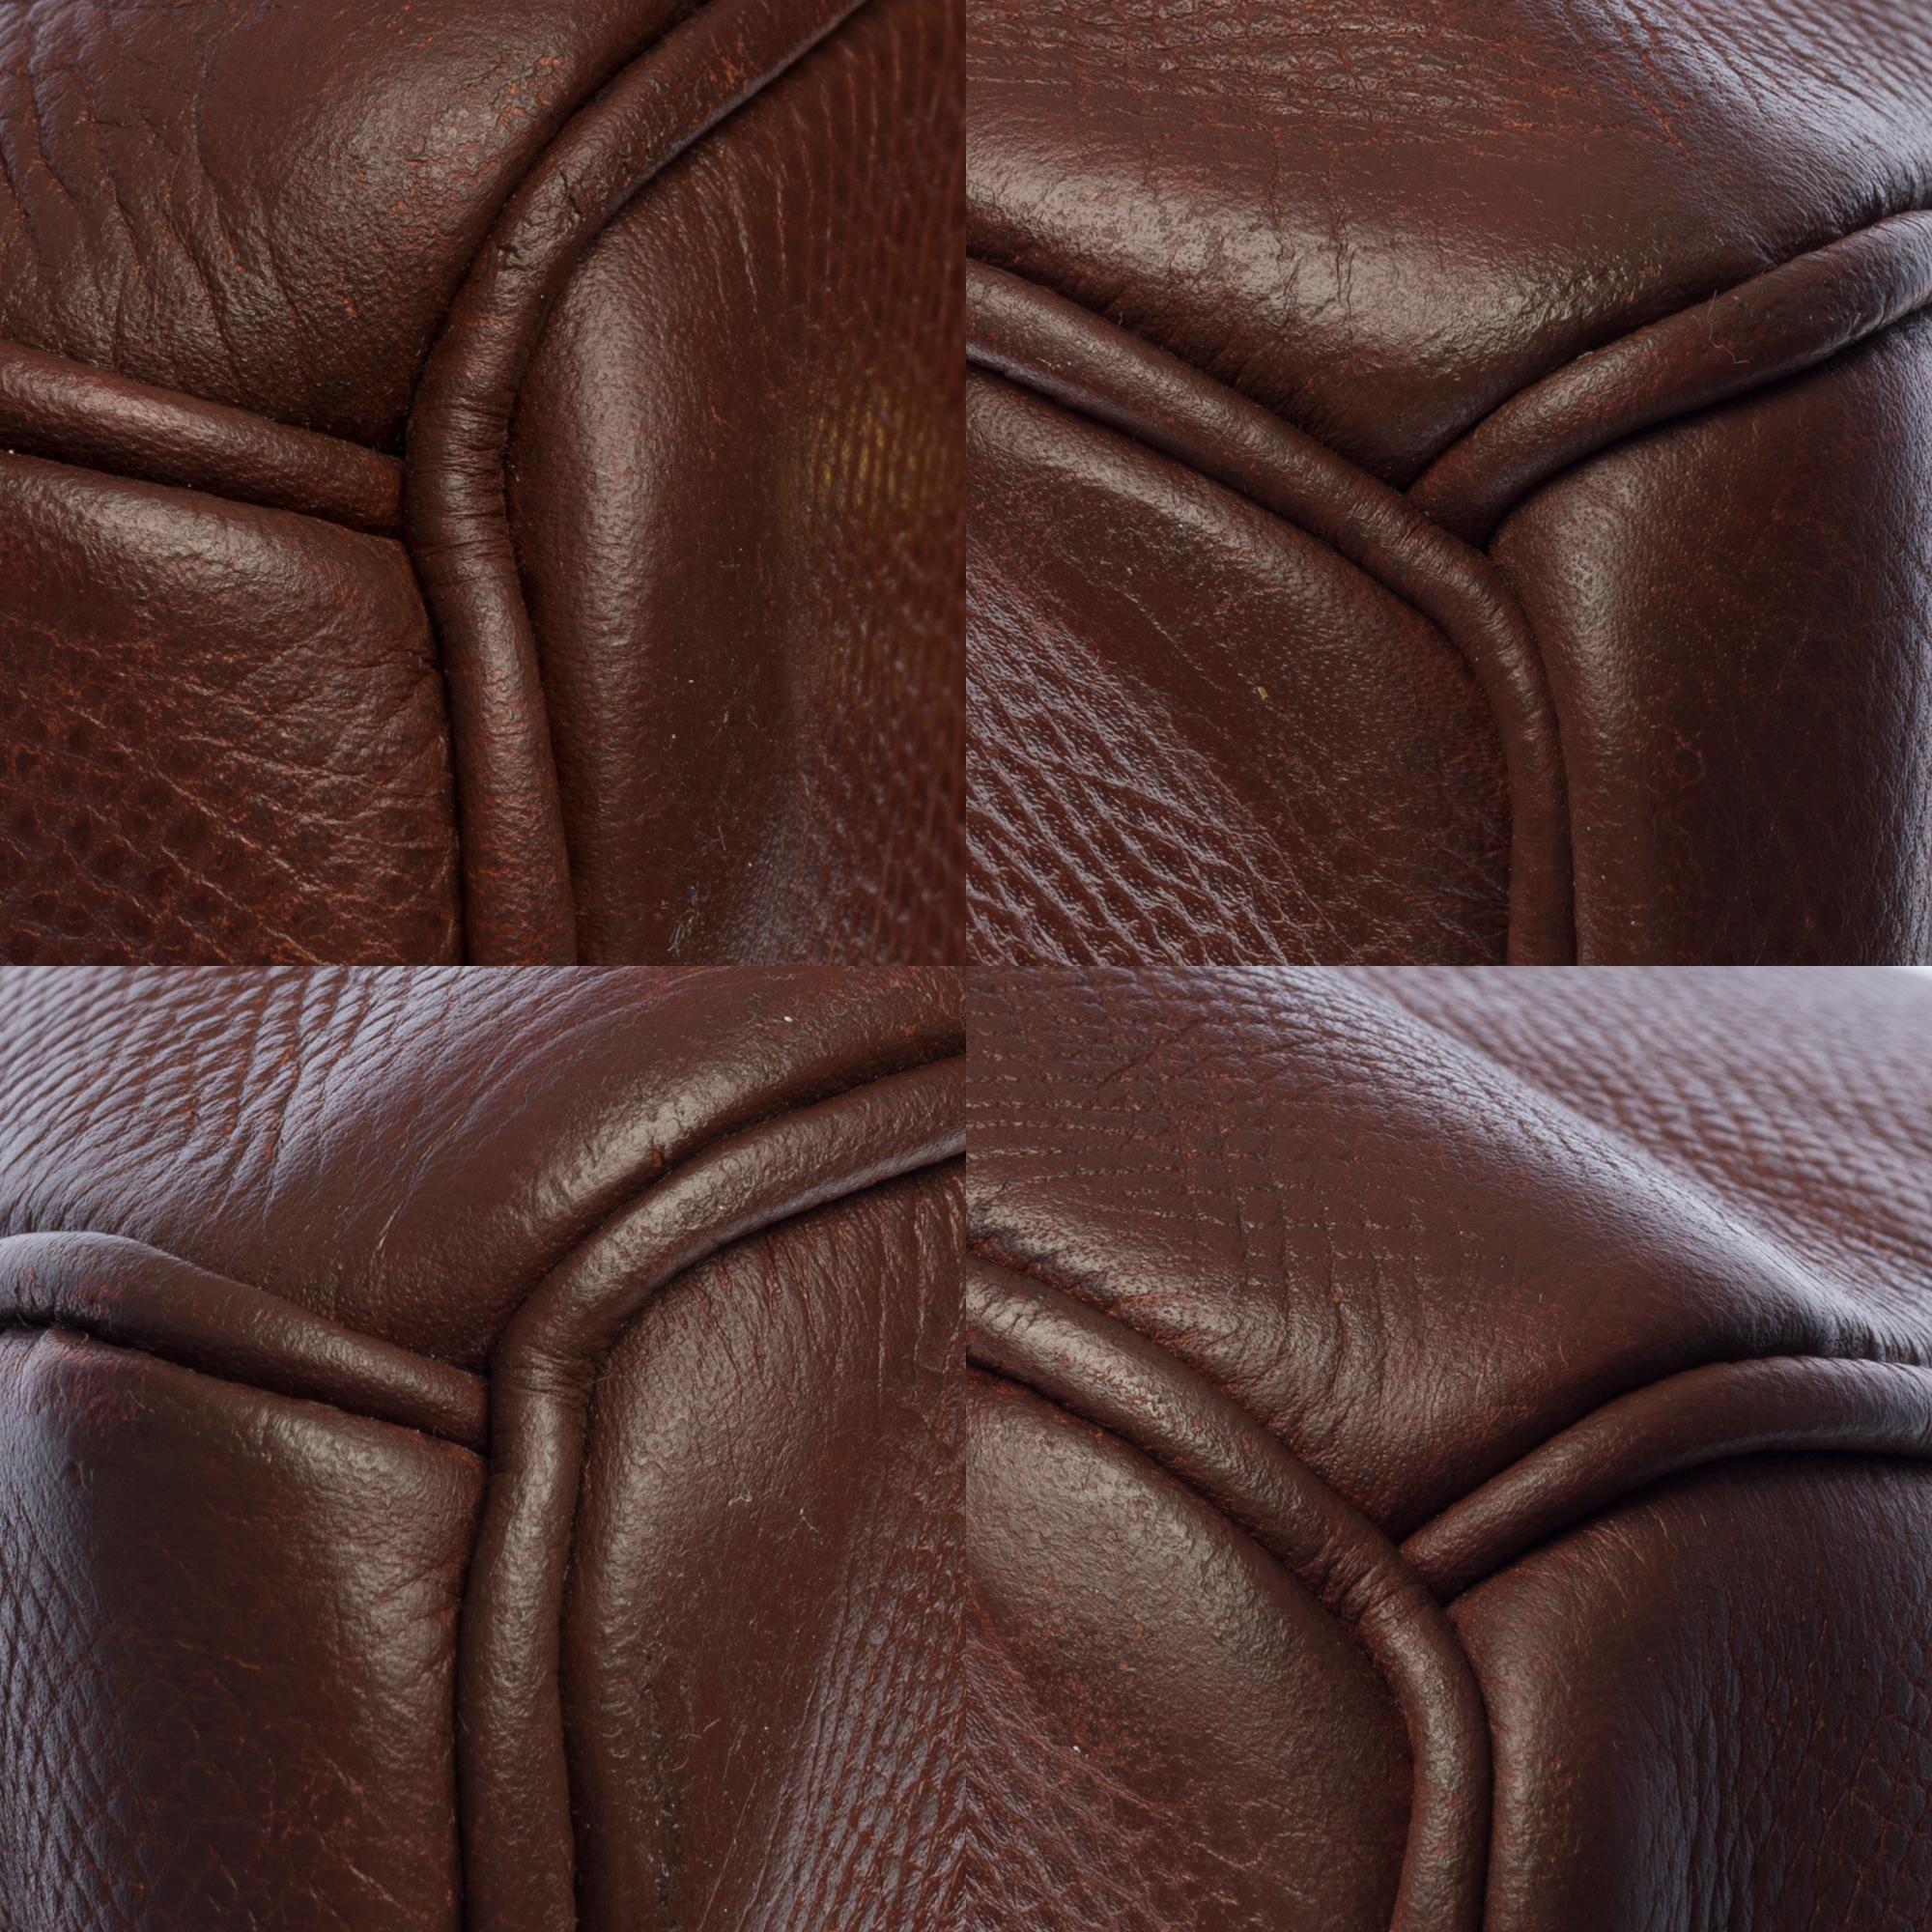 Hermès Birkin 35 handbag in brown Courchevel leather with gold hardware ! 3